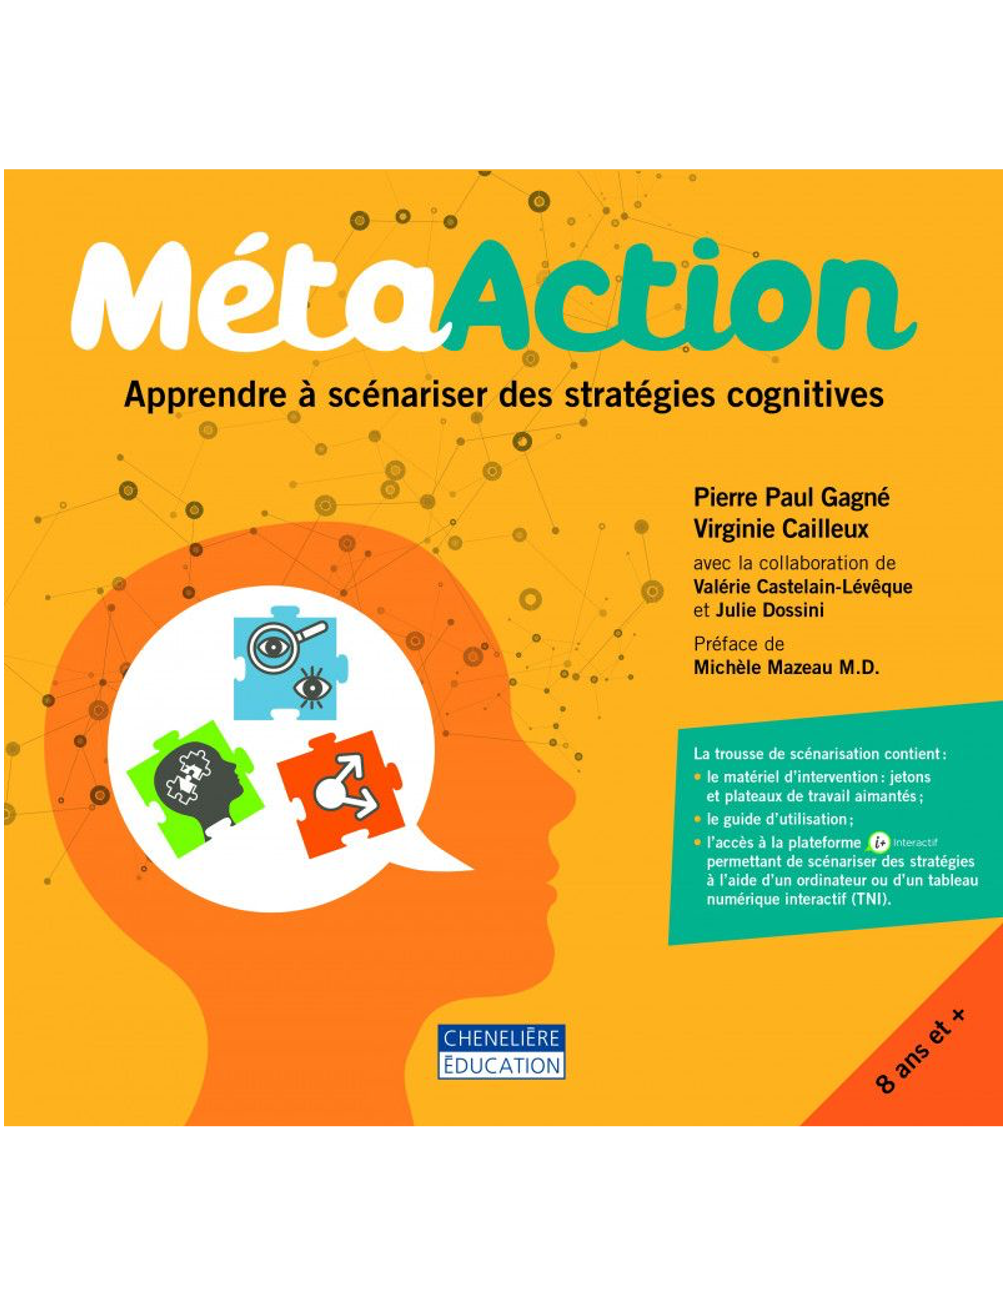 MétaAction, apprendre à scénariser des stratégies cognitives, Pierre Paul Gagné